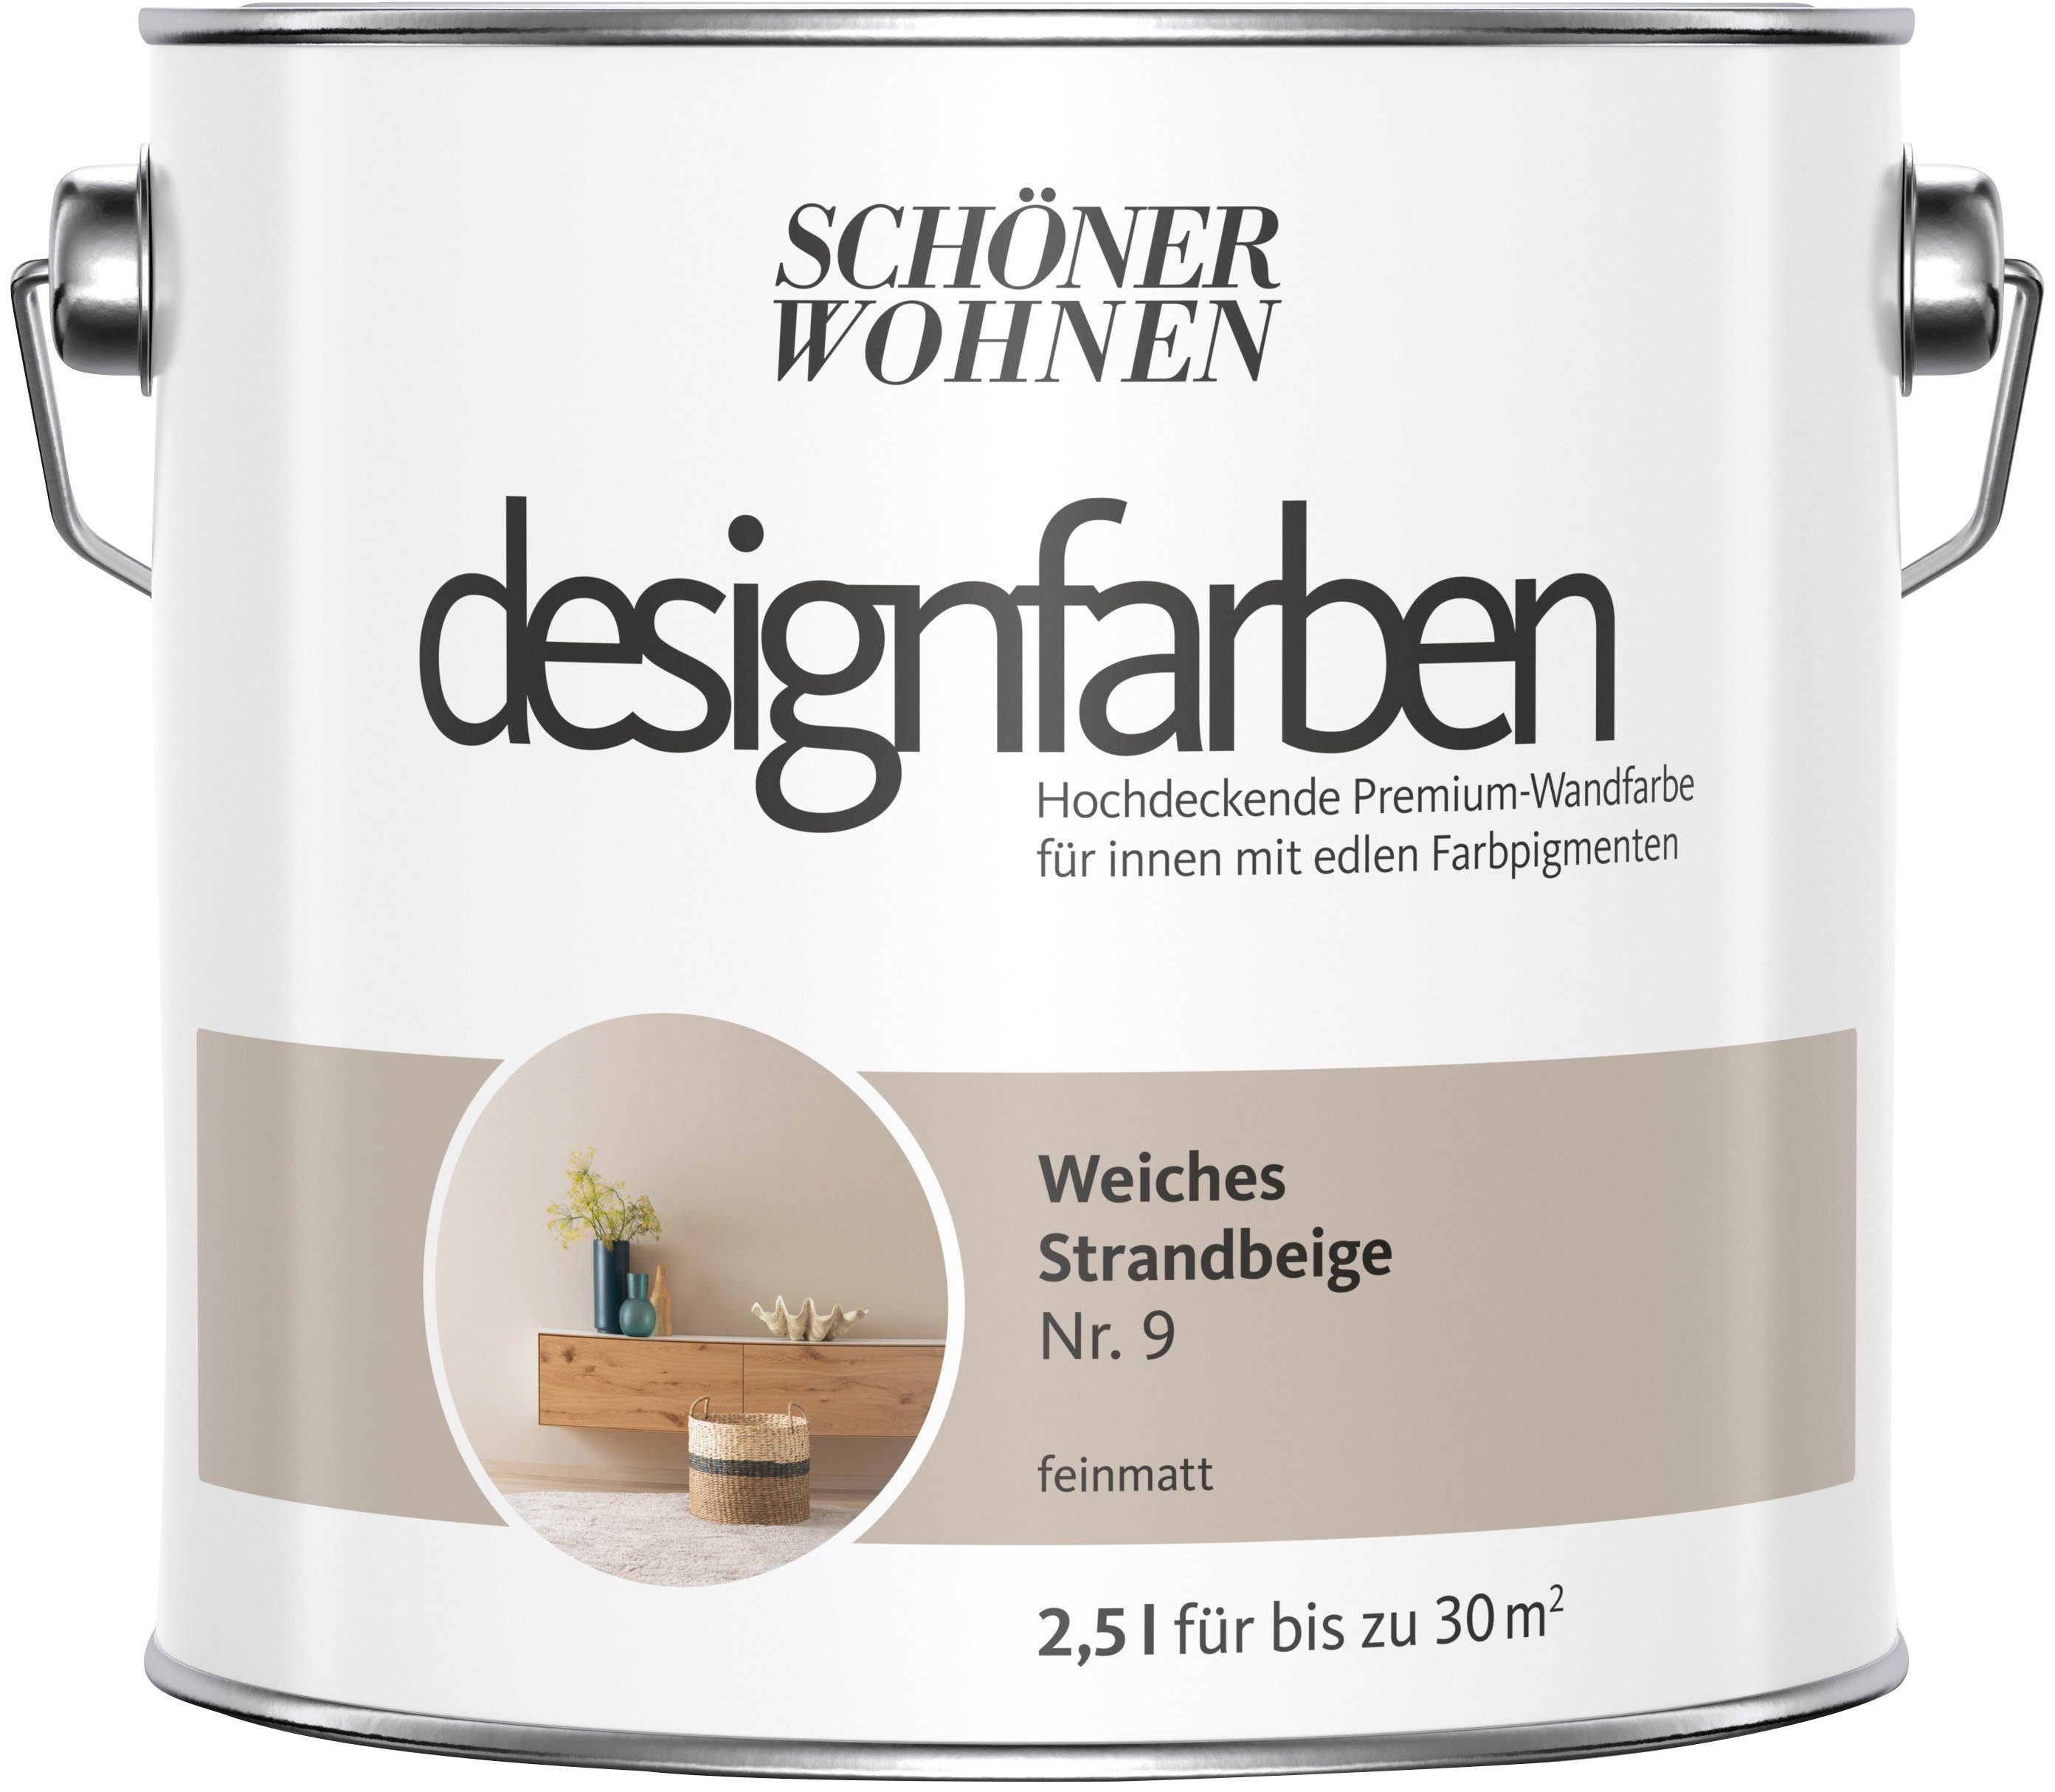 SCHÖNER WOHNEN FARBE Wandfarbe designfarben, 2,5 Liter, Weiches Stranbeige Nr. 9, hochdeckende Premium-Wandfarbe